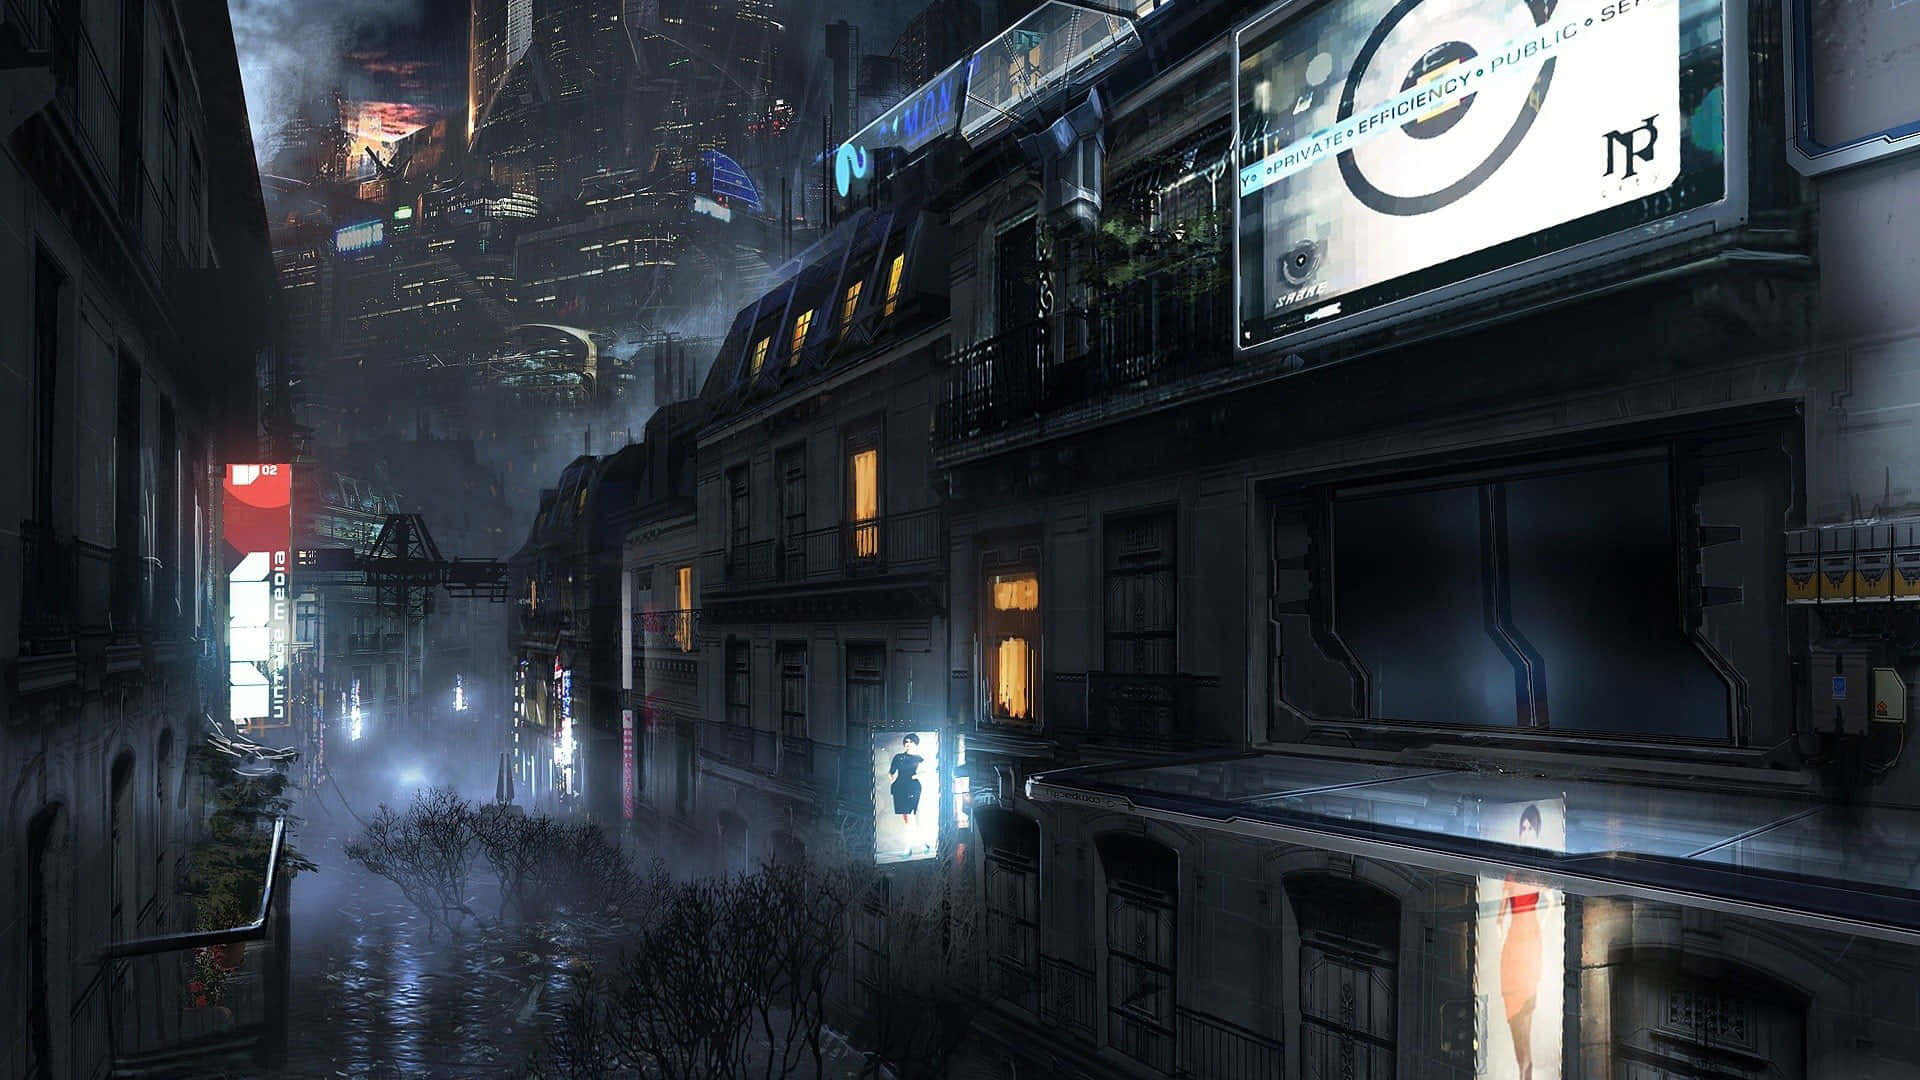 Explore the future at Futuristic City!